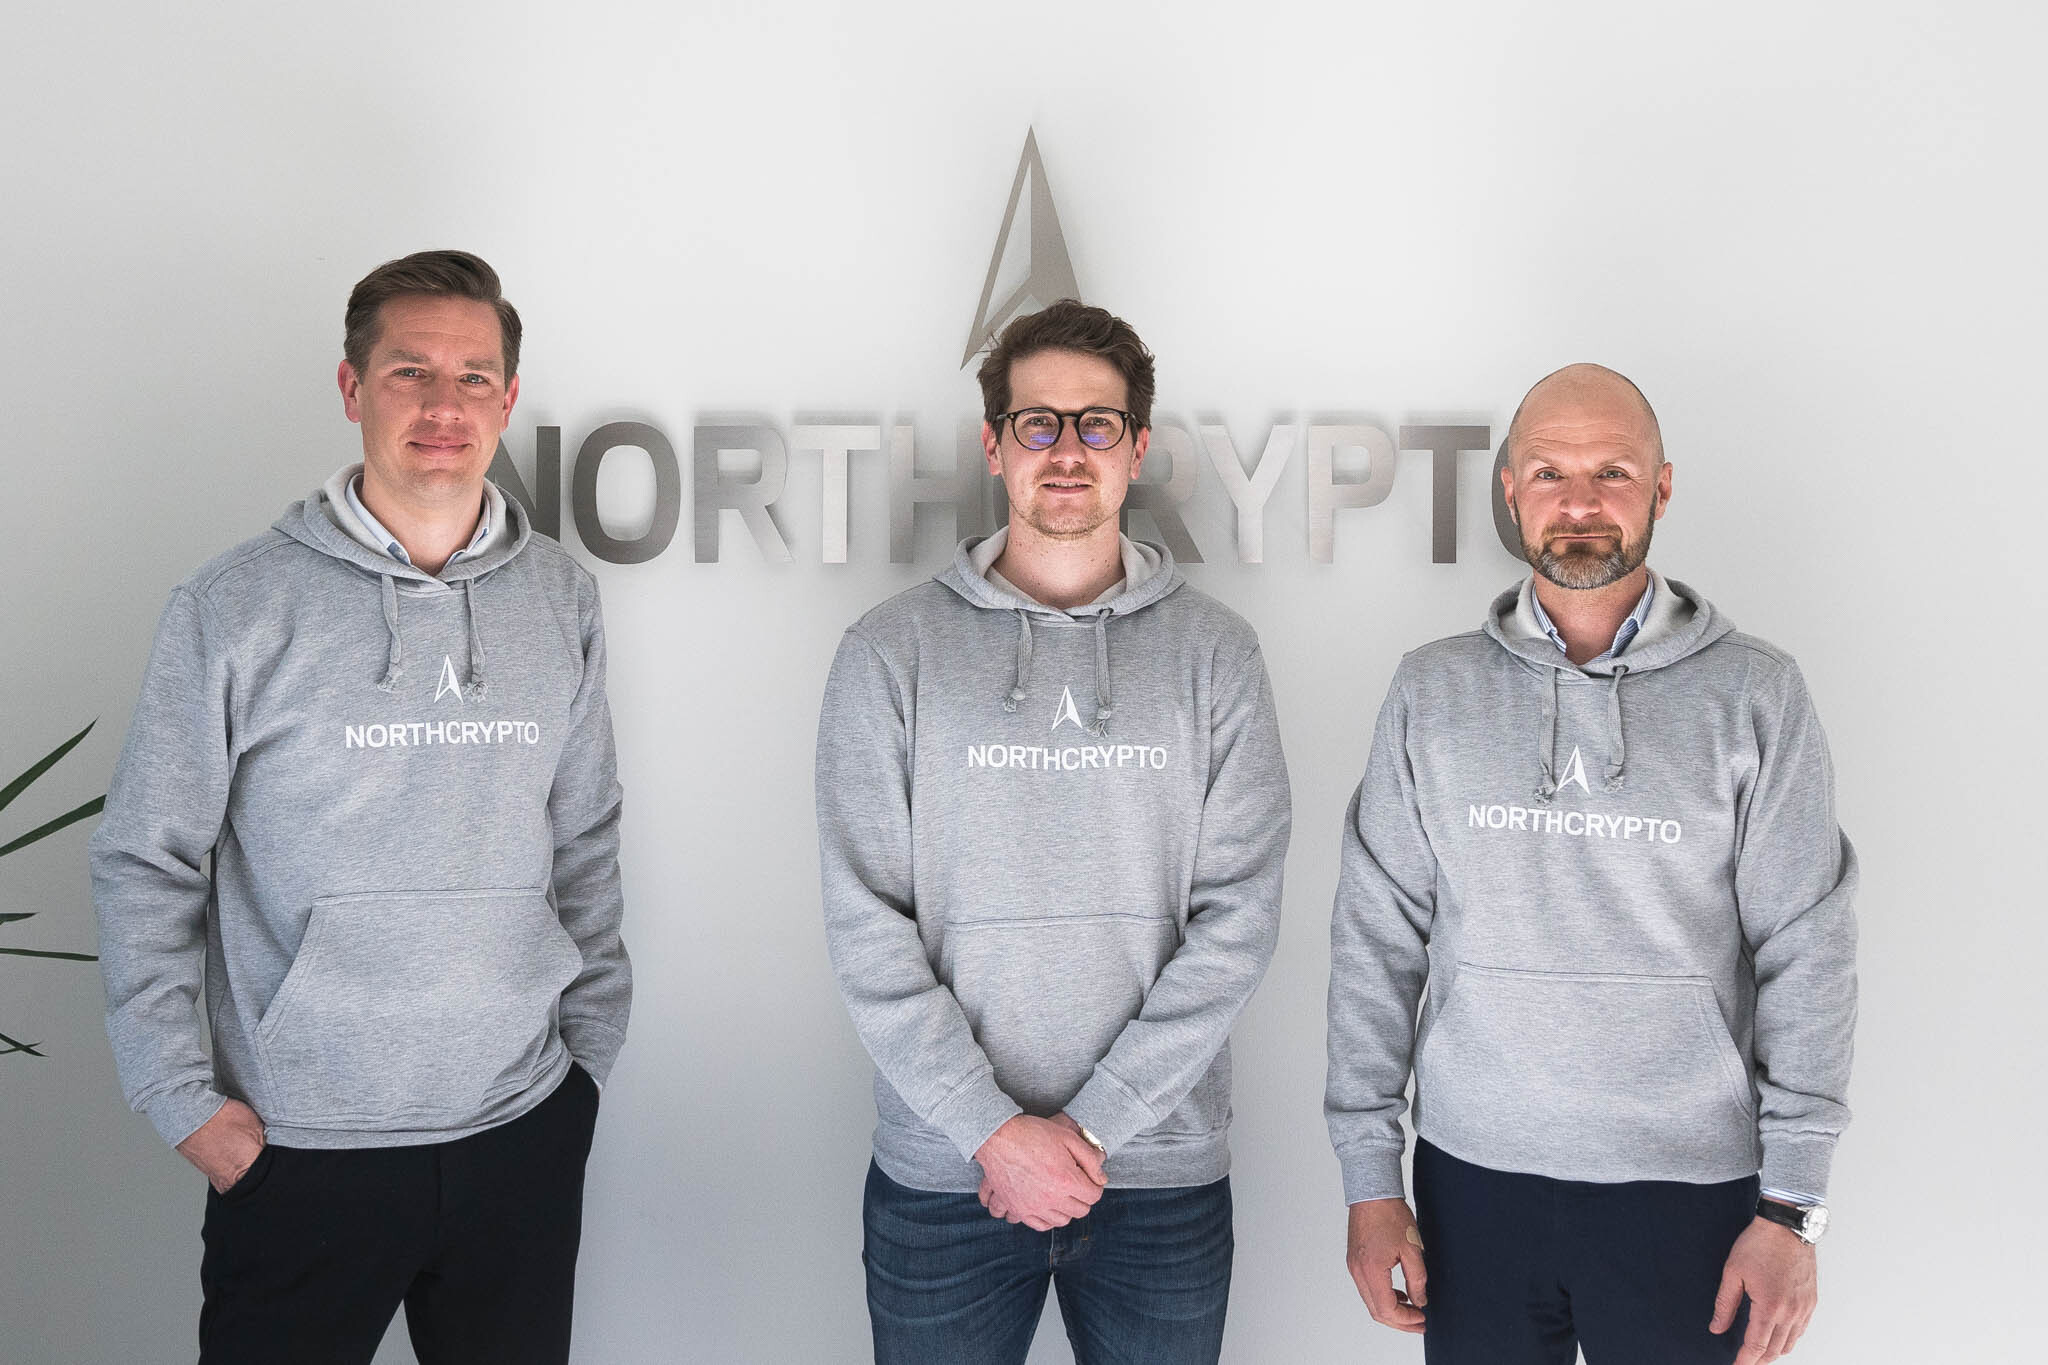 Northcrypto utökar sin ägarstruktur och stärker sin styrelse